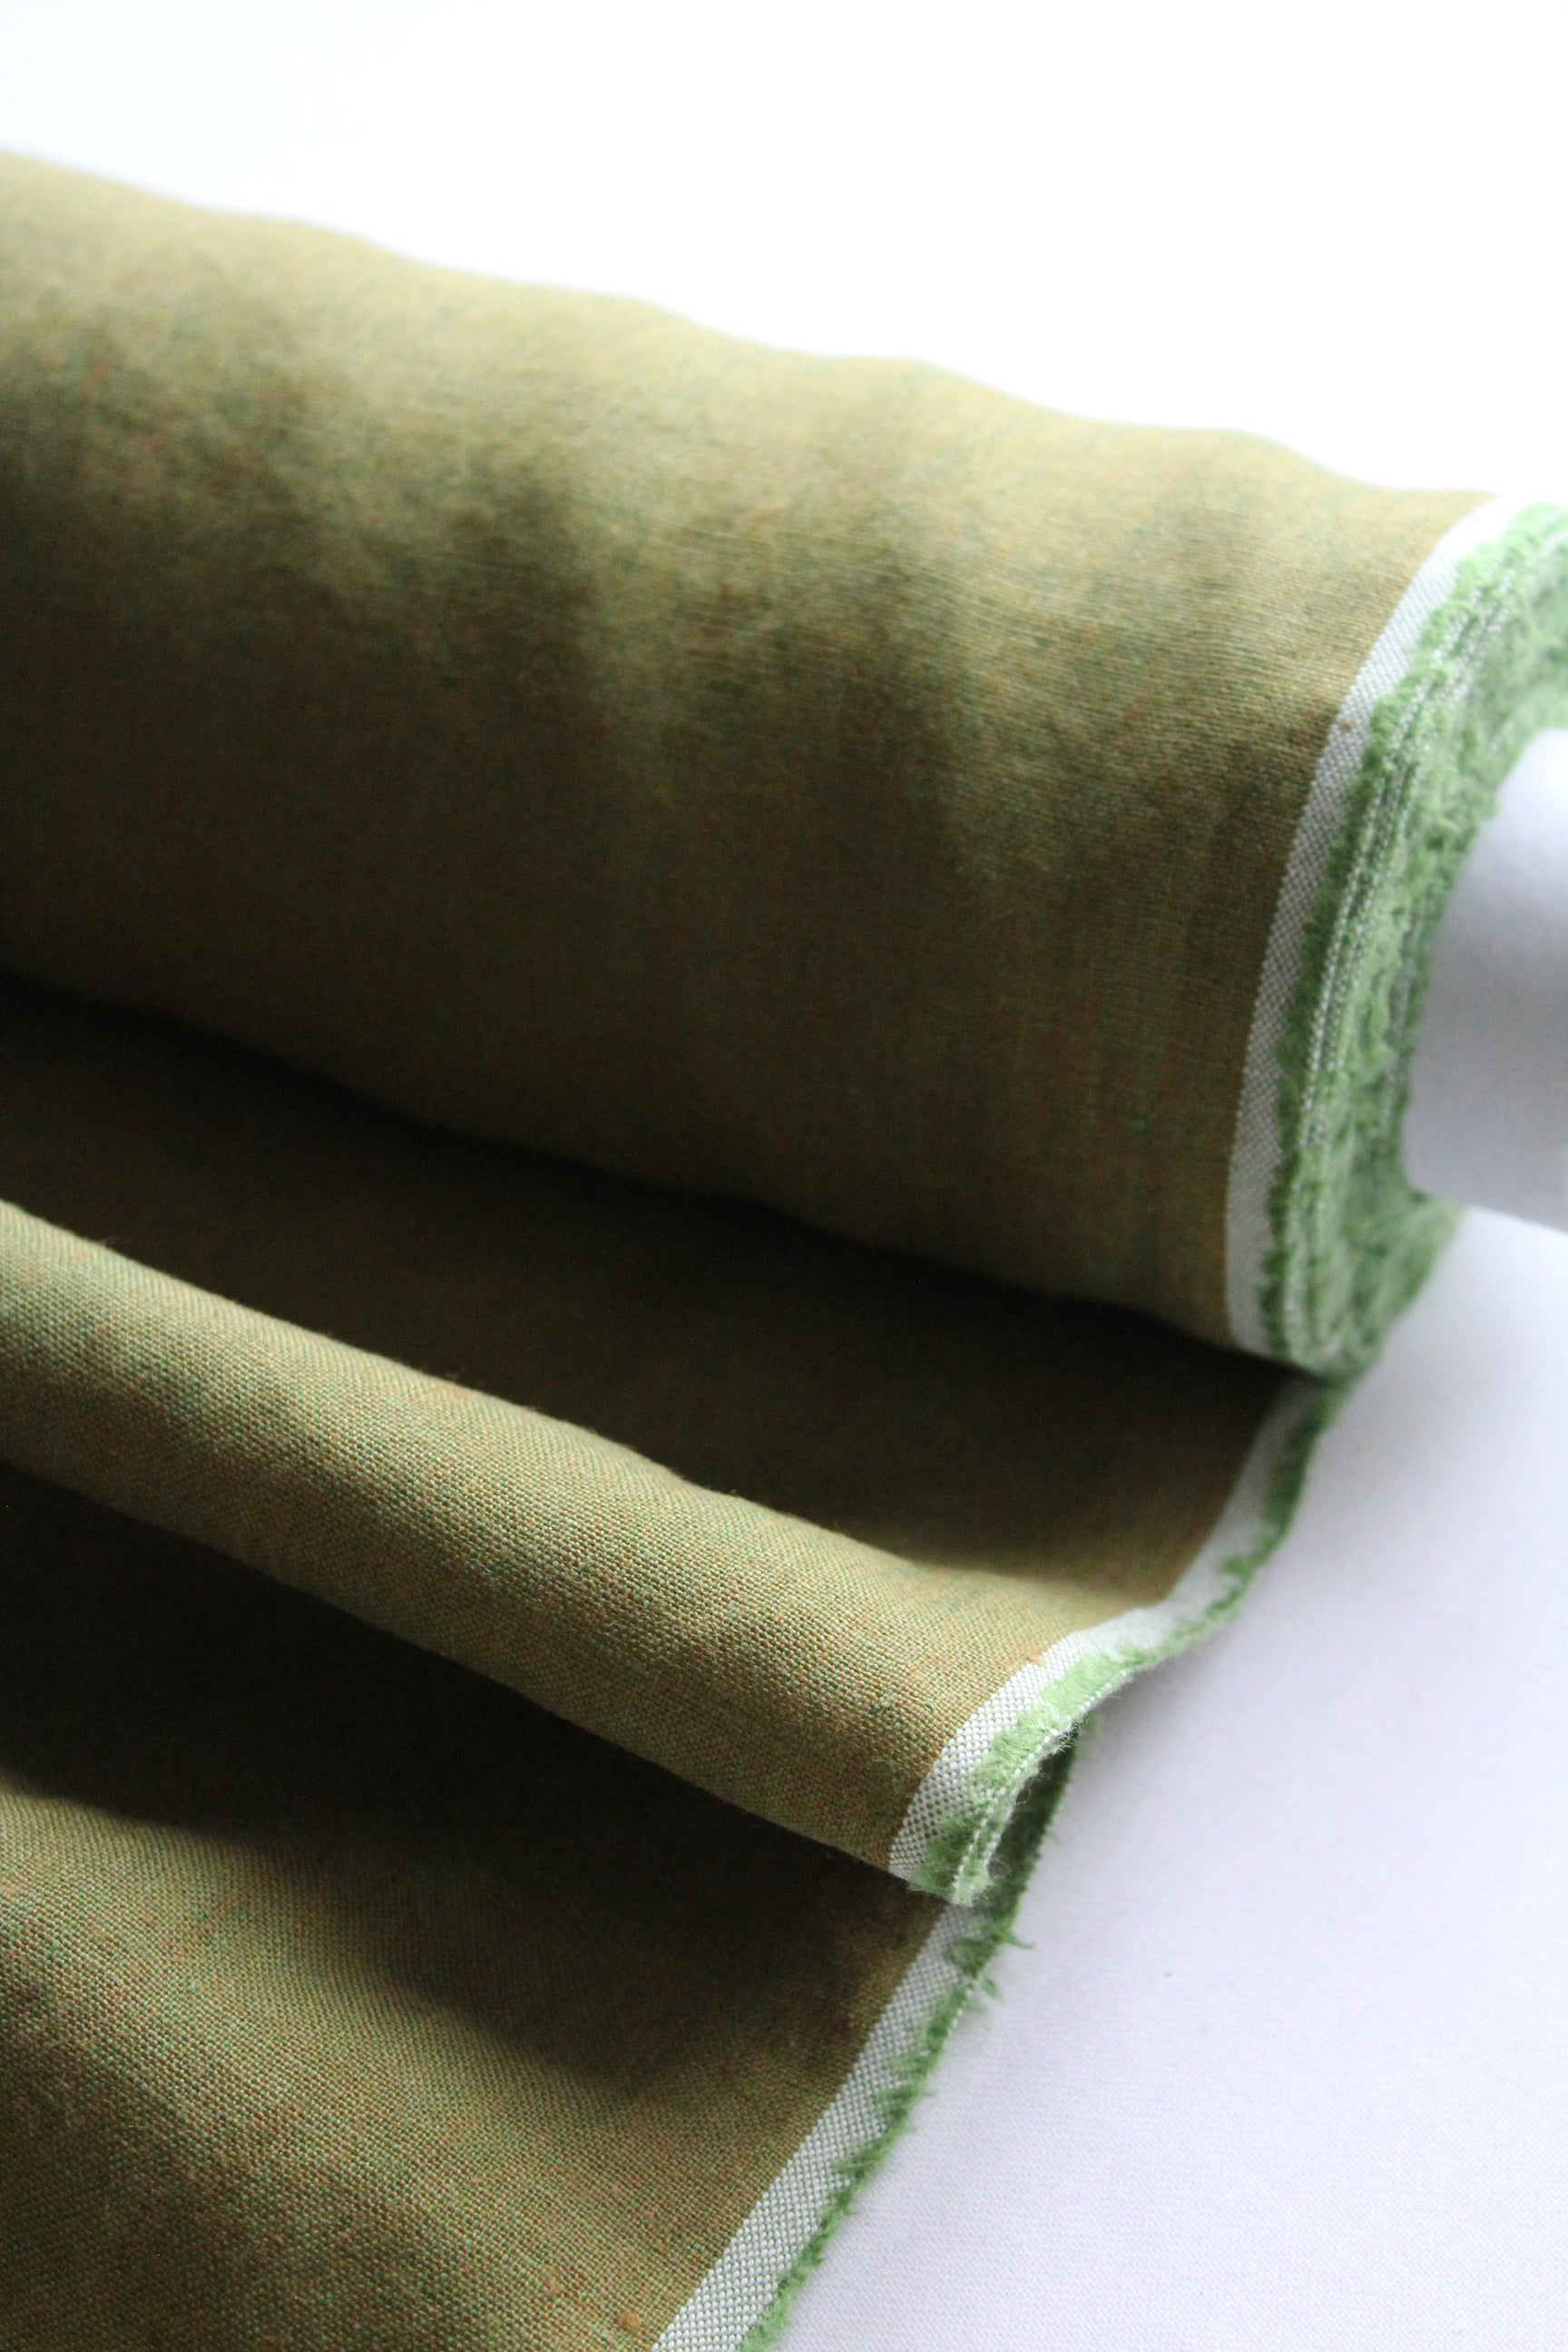 Kira Gold Moss Linen Fabric | LAST STOCK - AVLEN